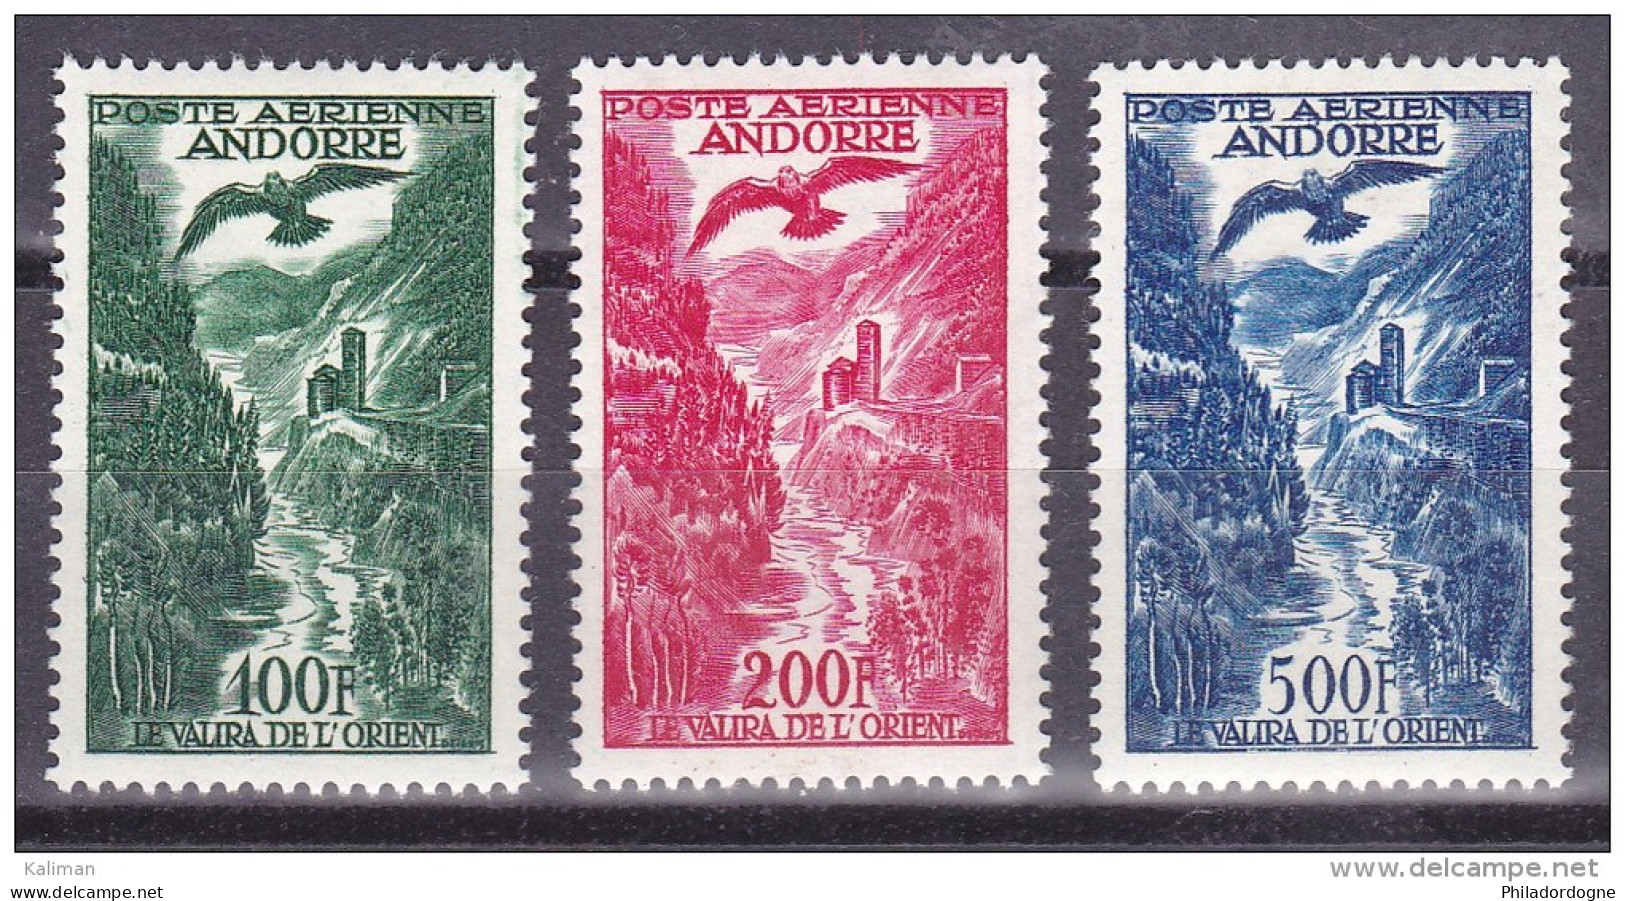 Andorre P.A. N° 2 à 4 Xx - Cote 192.5 Euros - Prix De Départ 55 Euros - Airmail